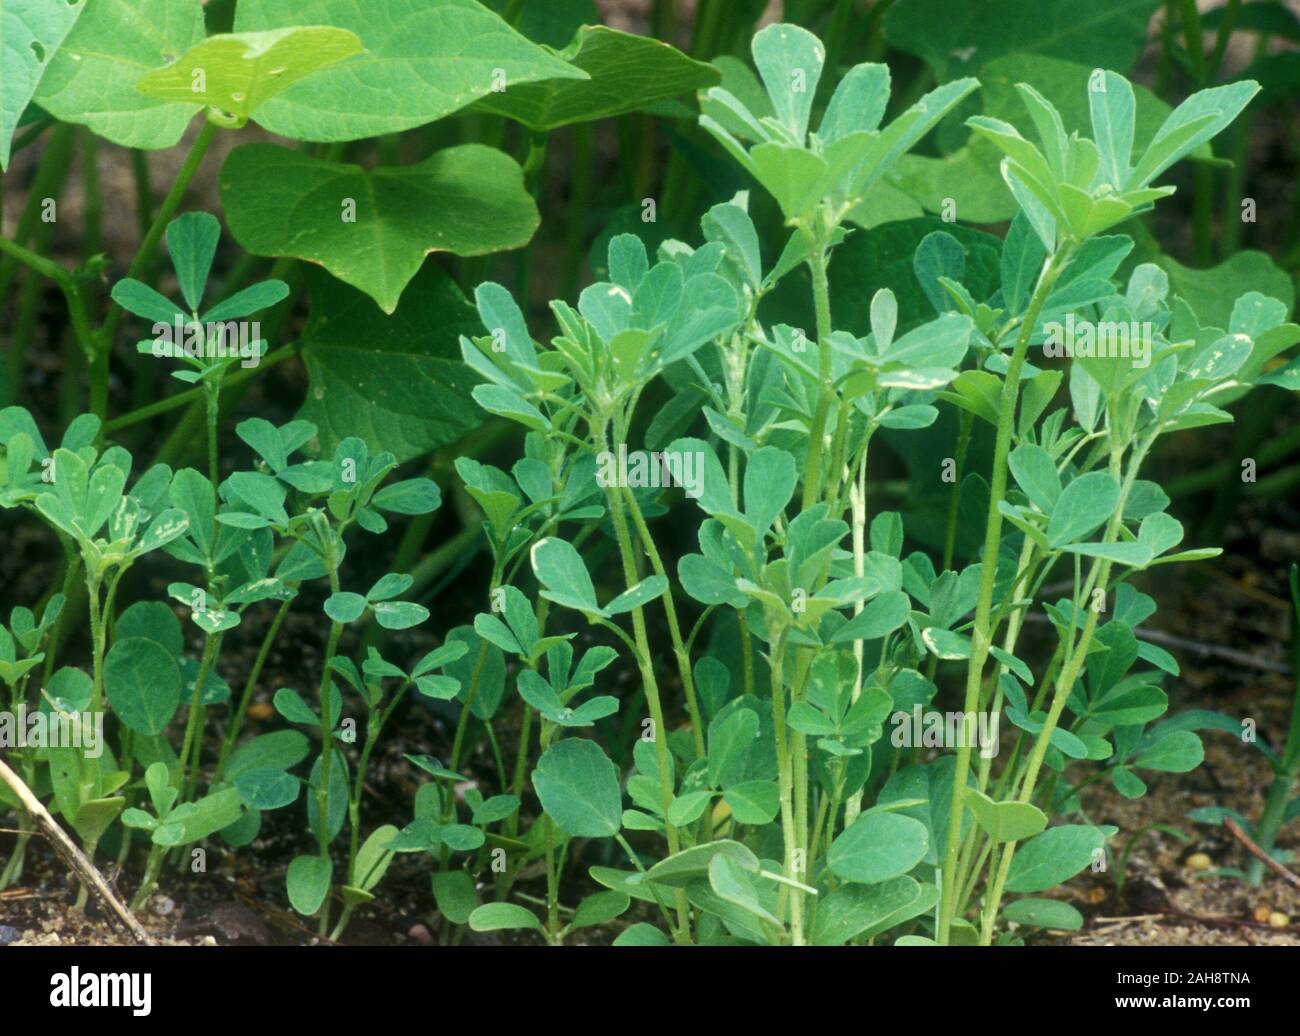 De plus en plus de fenugrec (Trigonella foenum-graecum) est cultivée comme une culture semi-arides. Utilisé comme ingrédient commun dans les plats de l'Inde. Banque D'Images